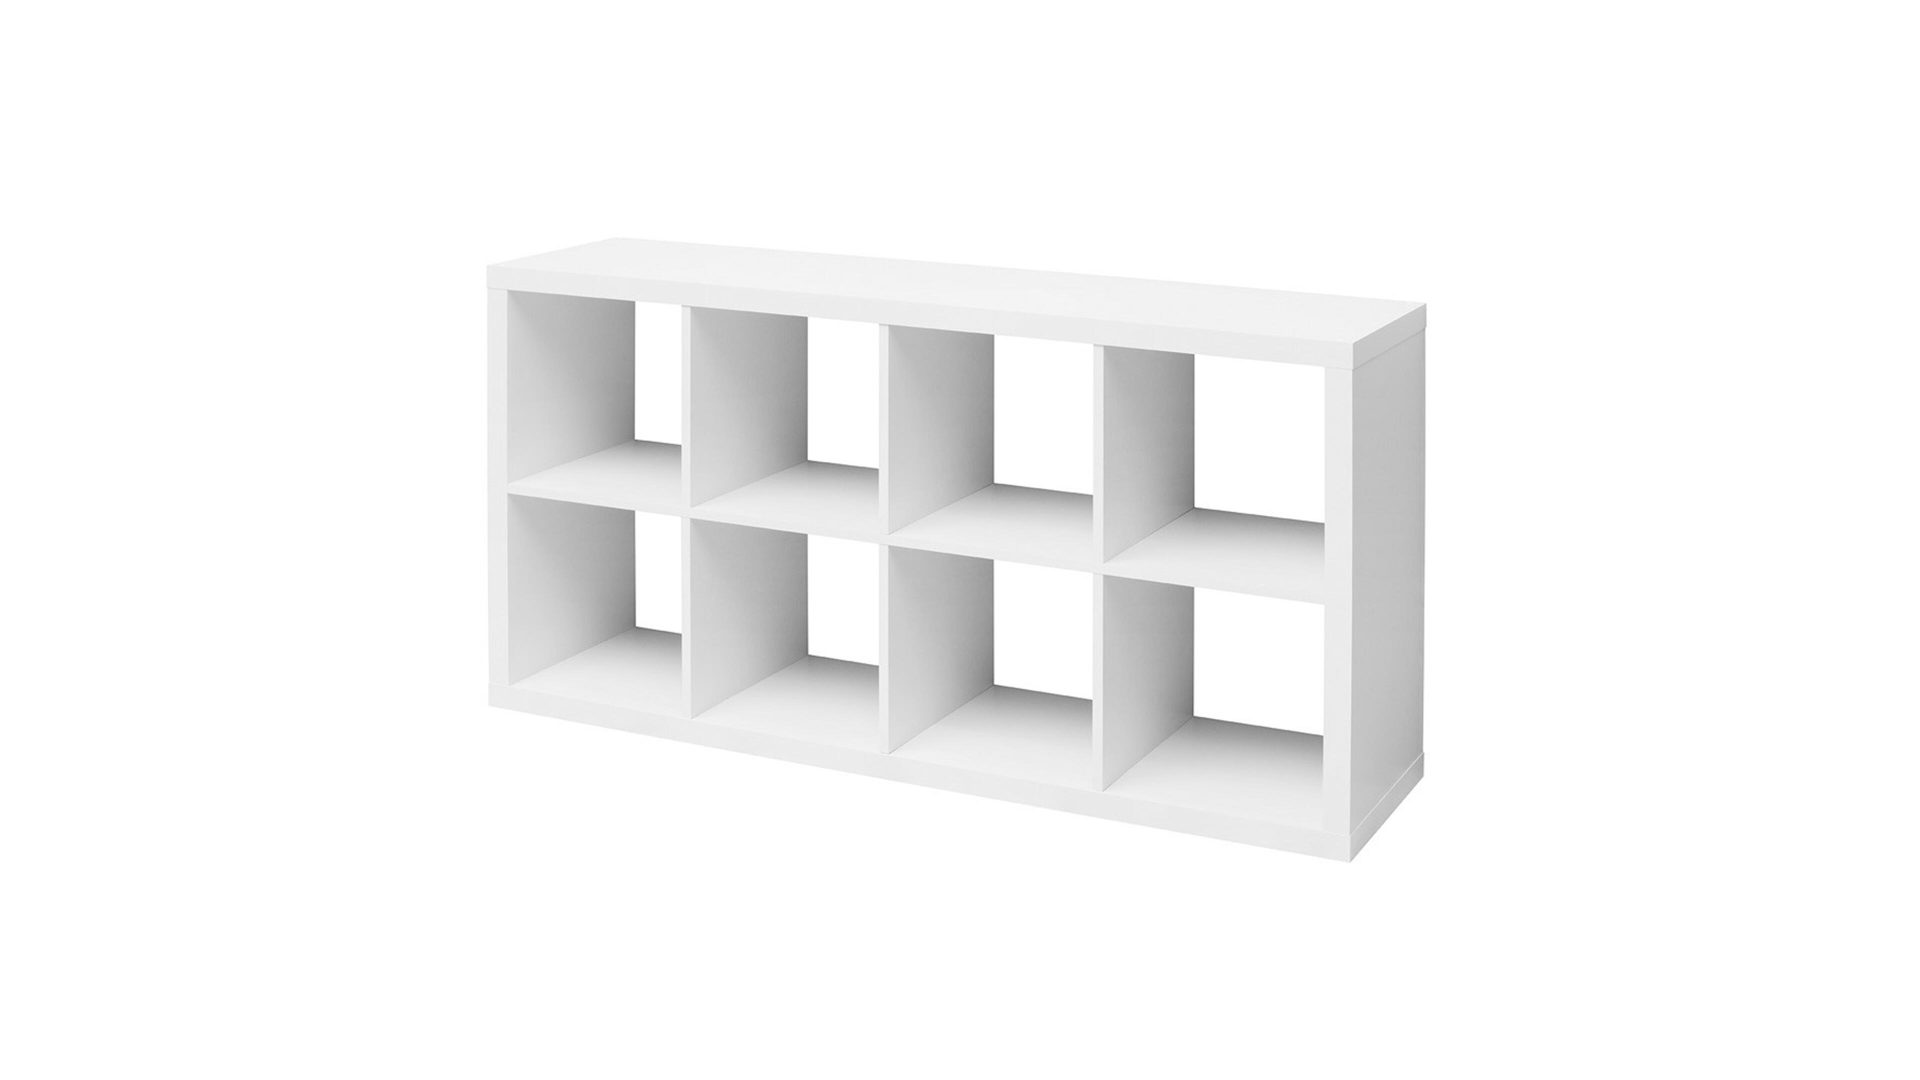 Raumteiler Bega consult aus Holz in Weiß Raumteiler auch als Bücherregal einsetzbar mattweiße Kunststoffoberflächen - acht Fächer, ca. 41 x 147 x 38 cm